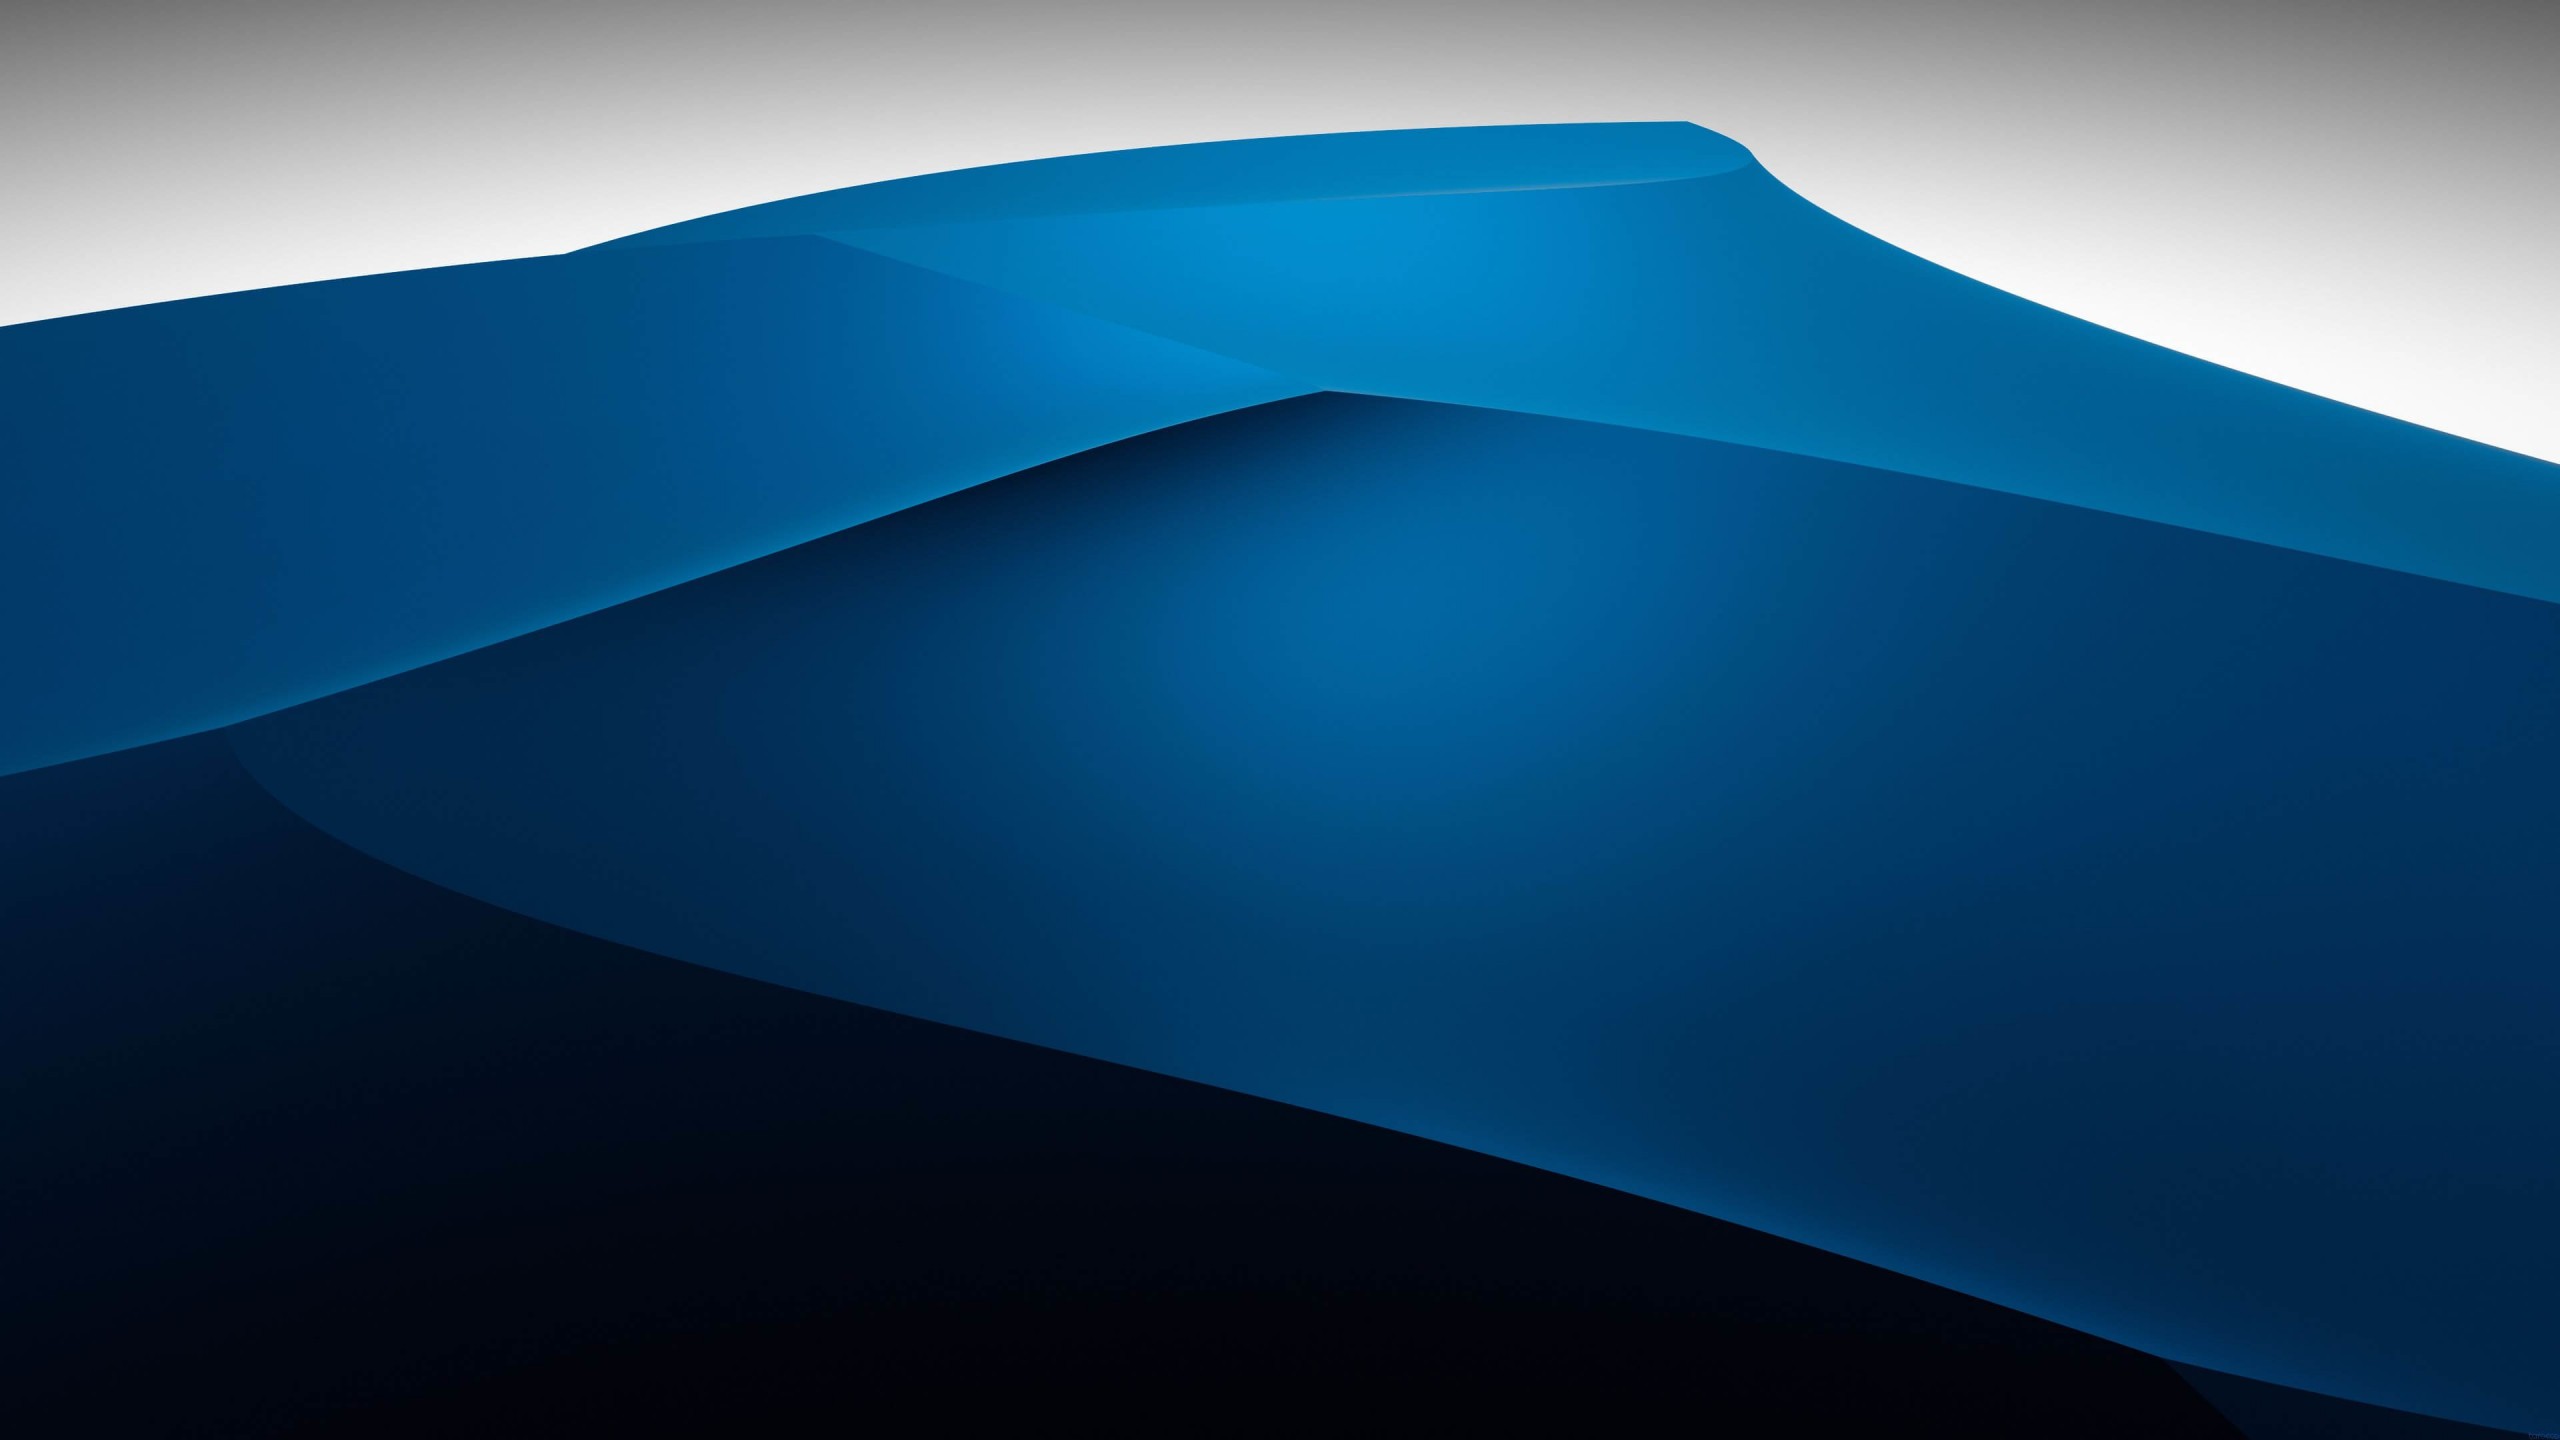 3D Blue Dunes Wallpaper for Social Media YouTube Channel Art